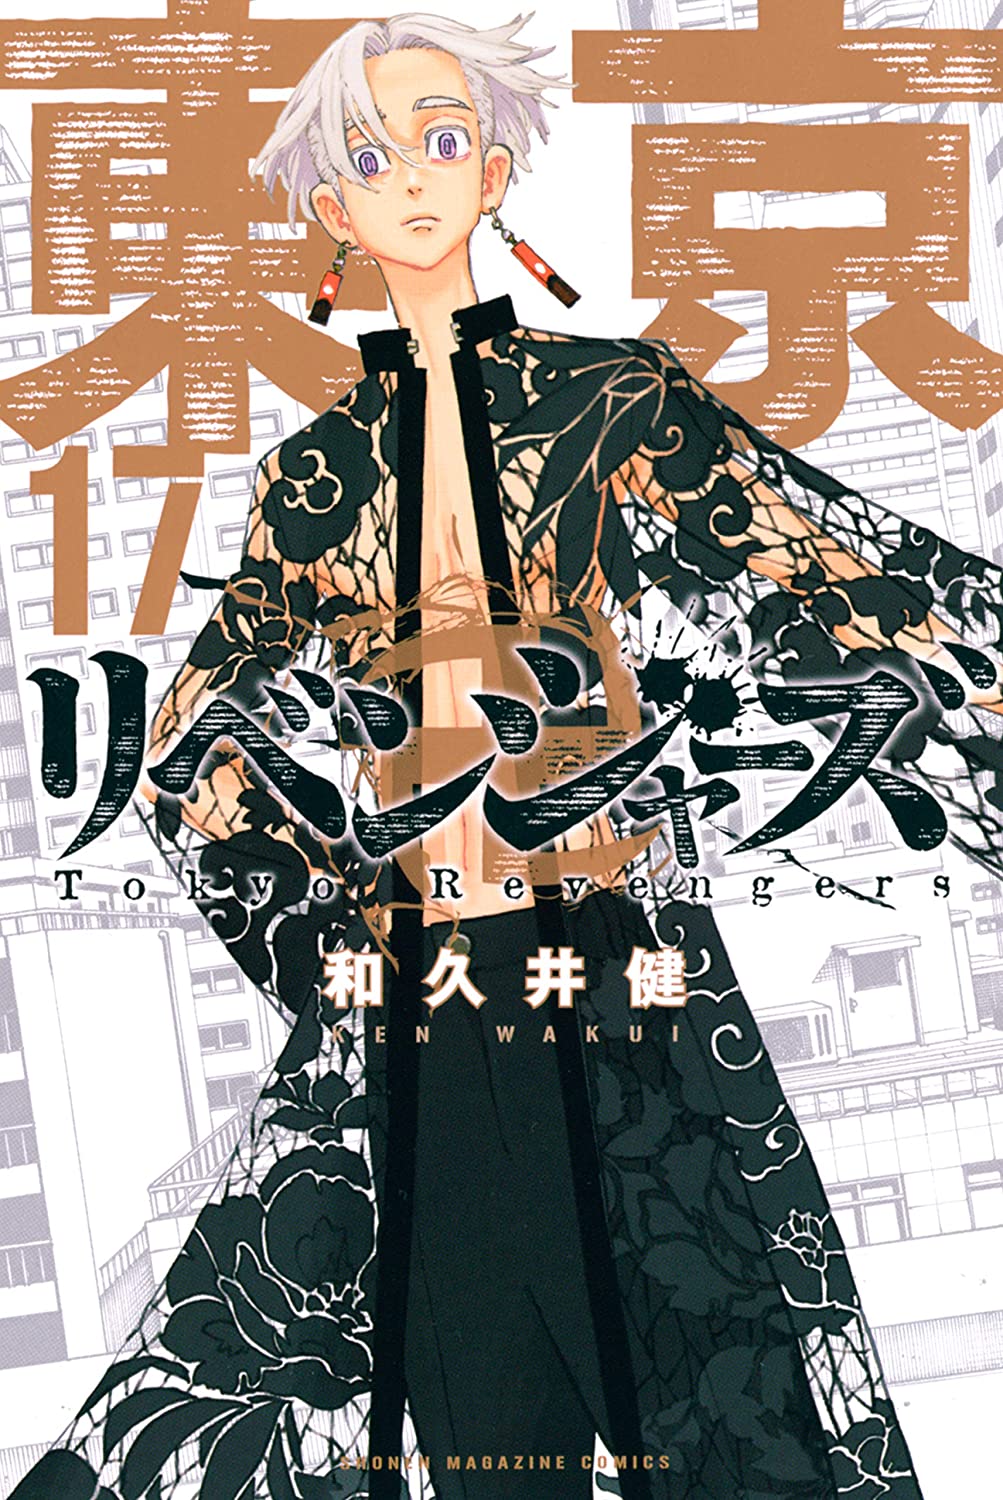 Tokyo Manji Revengers Manga